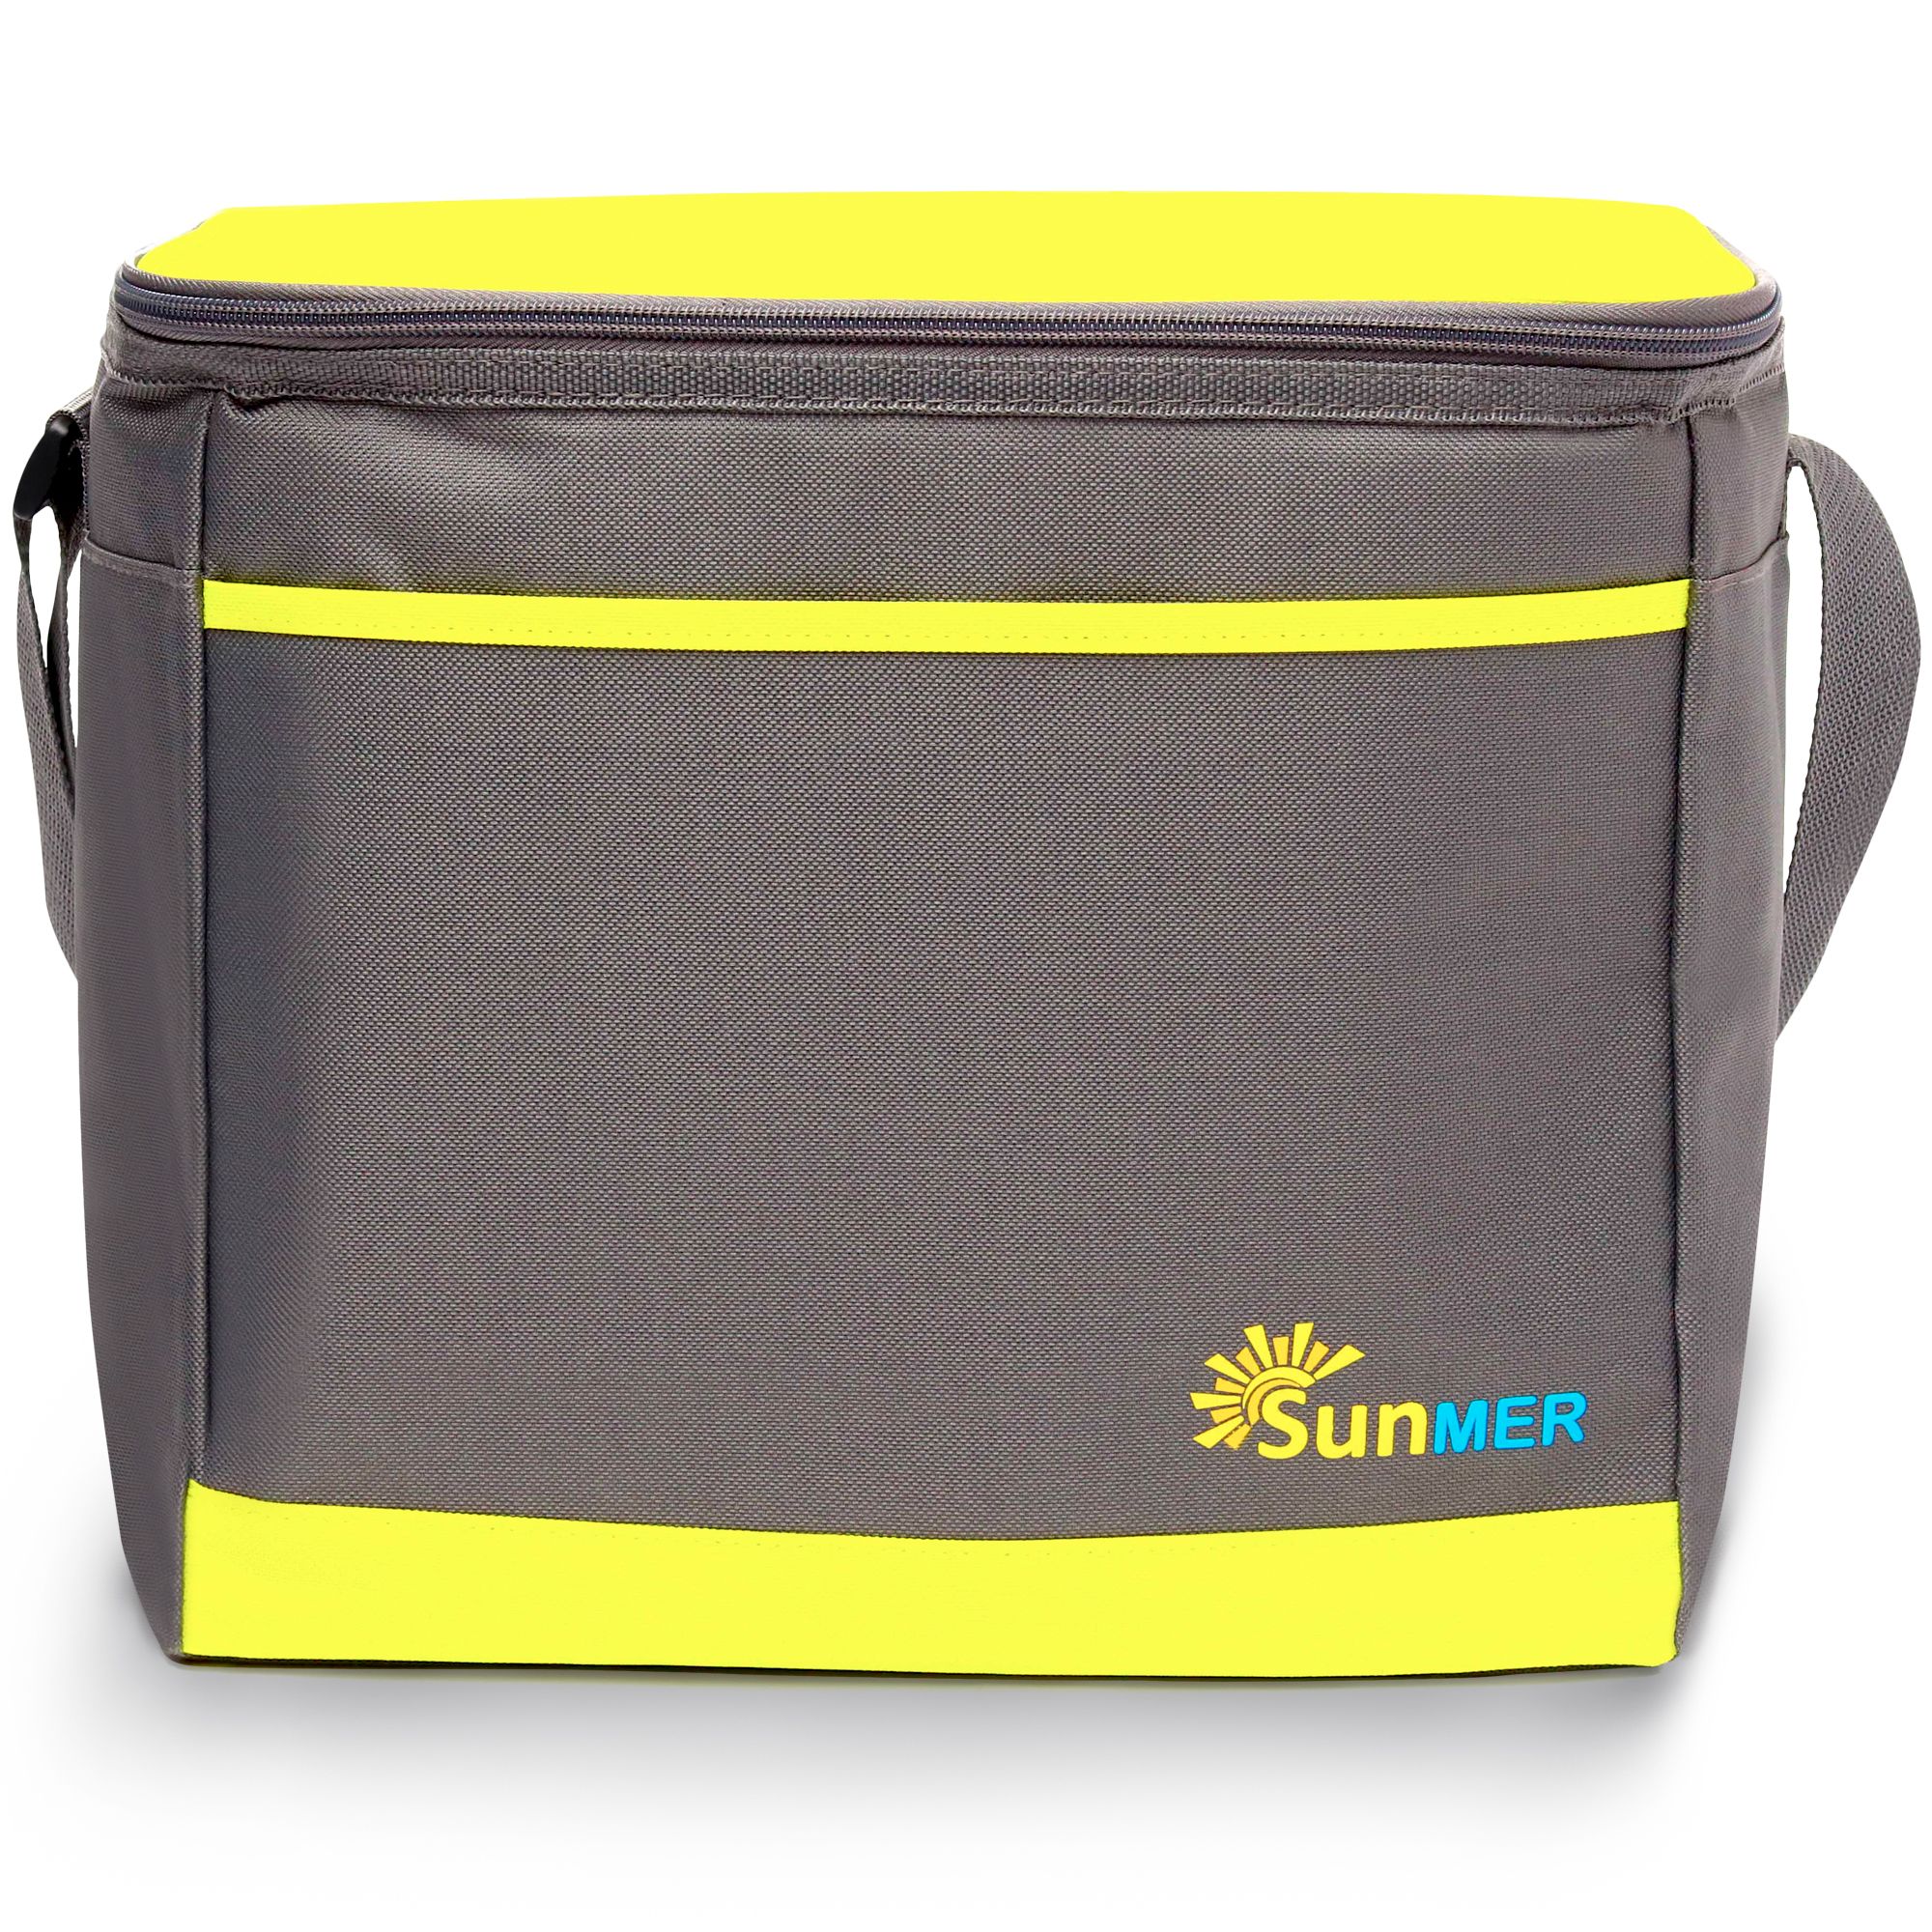 16L Cooler Bag With Shoulder Strap - Grey & Lime